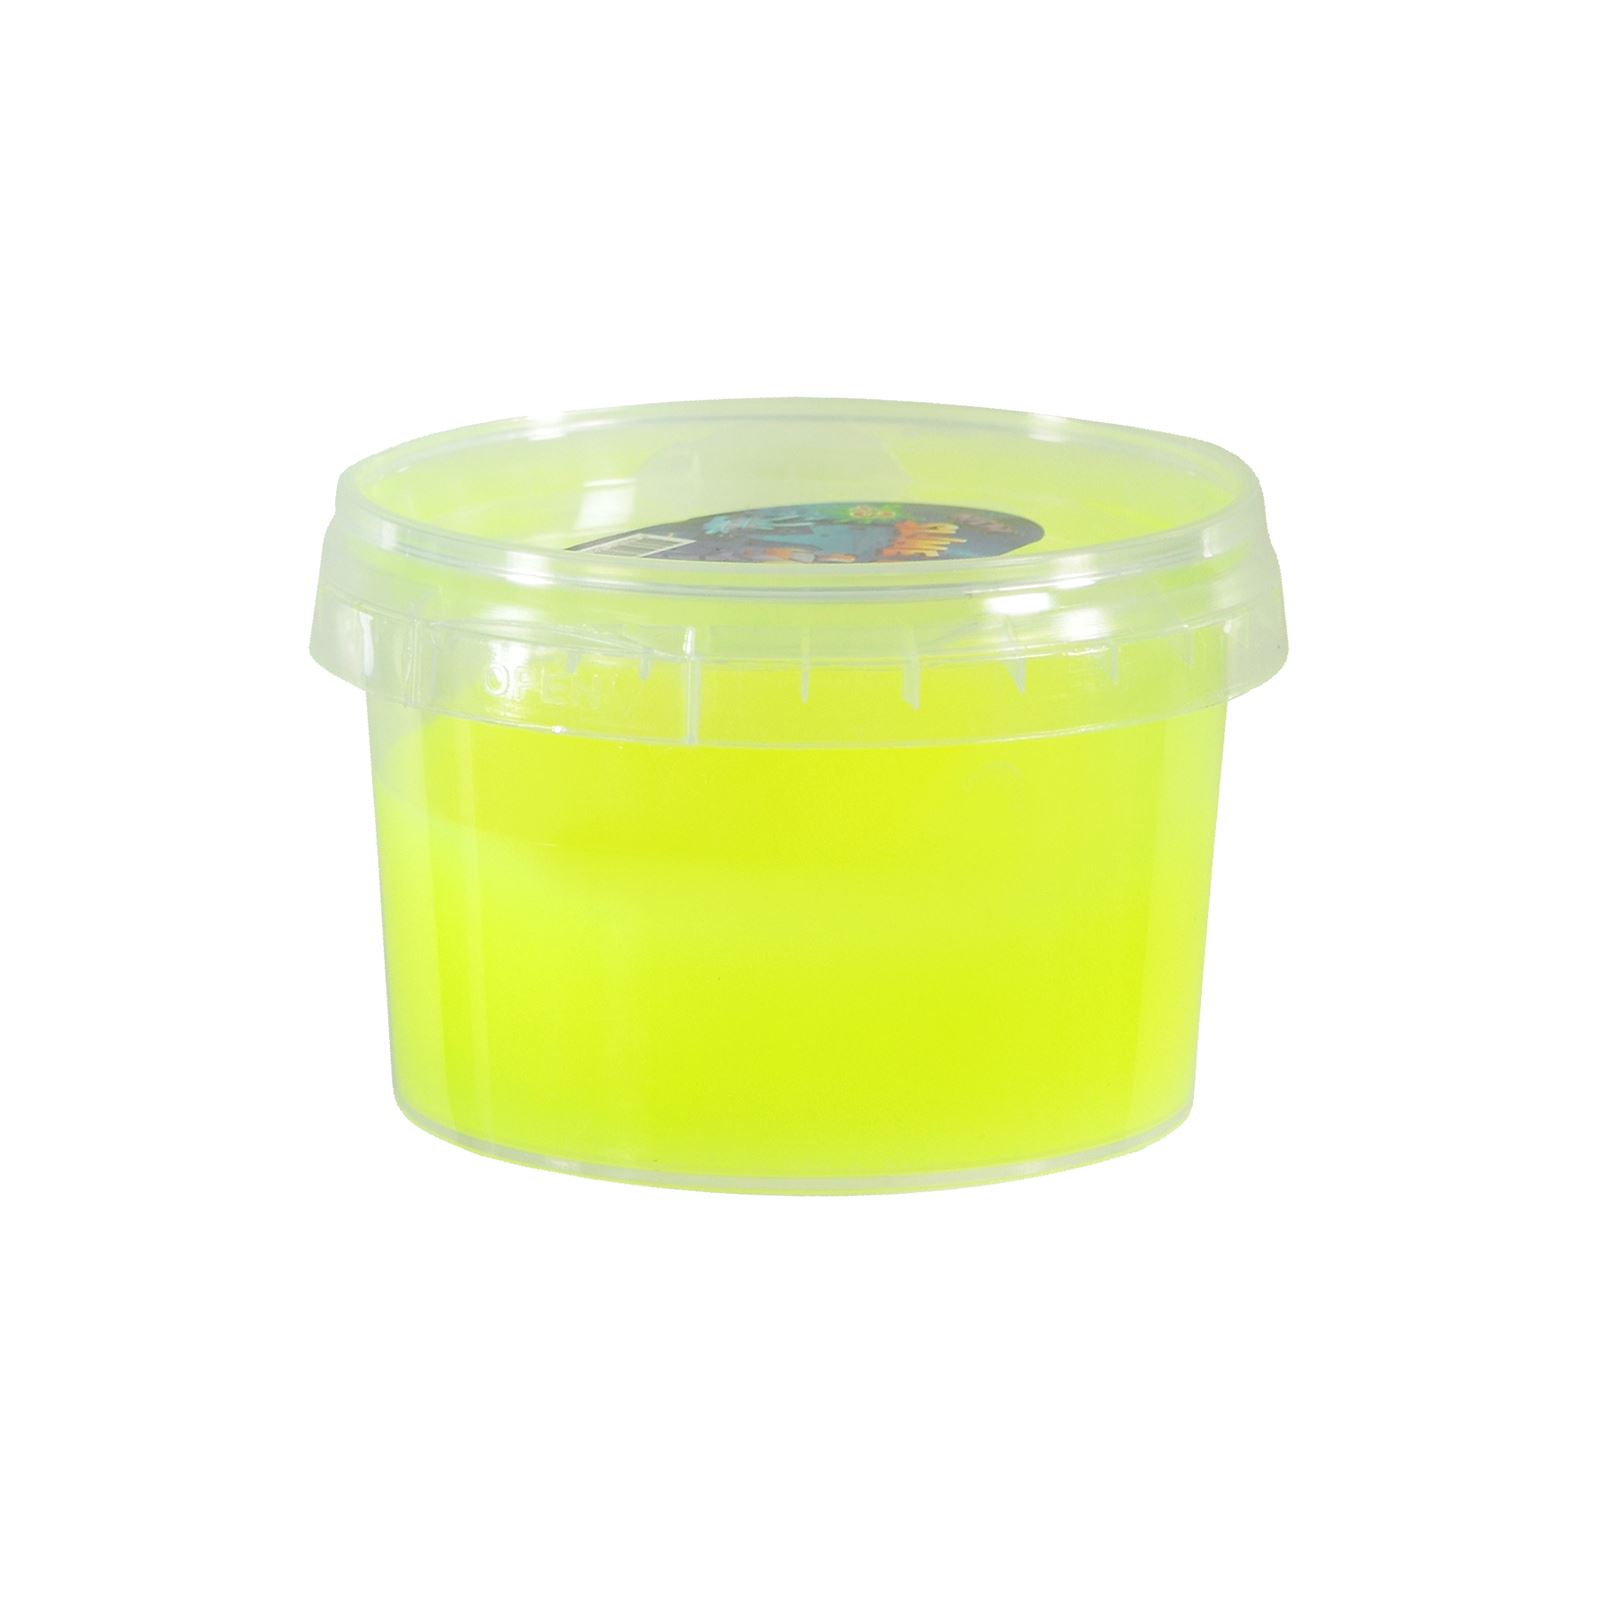 Duka Toys Yuvarlak Ufo Fosforlu Slime Oyun Hamuru 160 gr Sarı